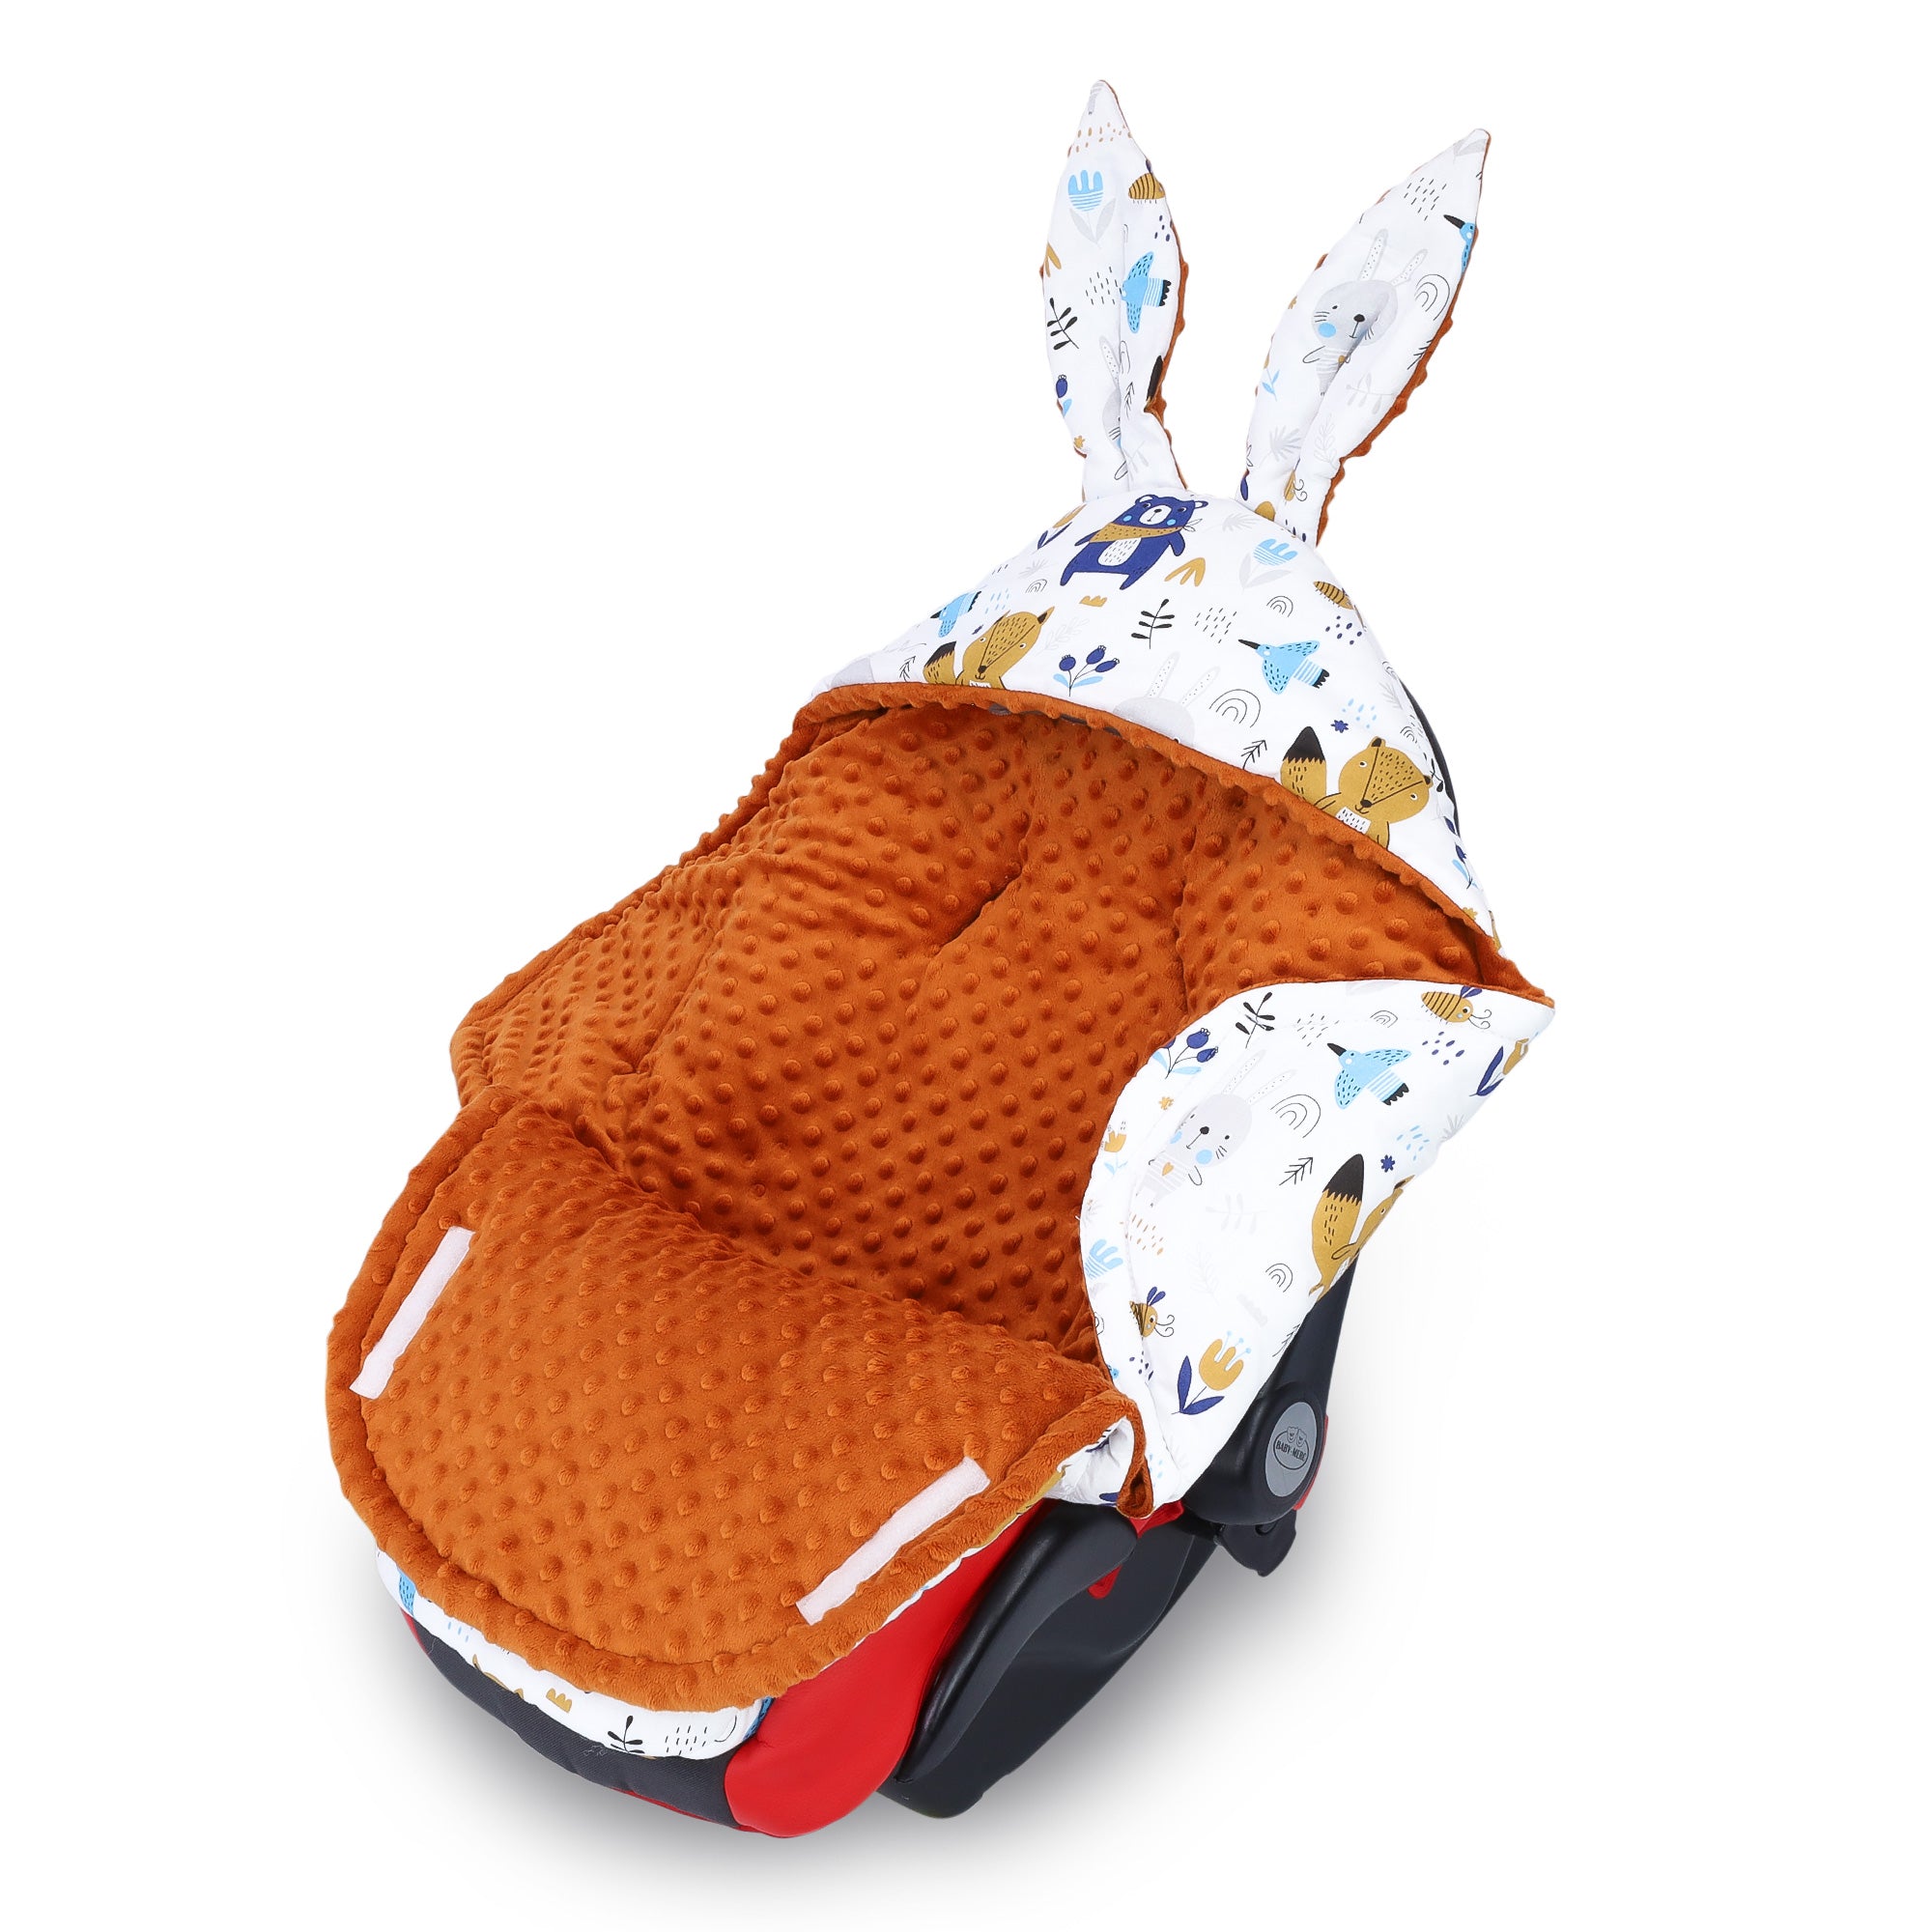 Einschlagdecke Babyschale Winter 80x87 cm - Fußsack Baby Decke für Auto  Wintersack Baumwolle Minky Eule Hellgrau : : Baby